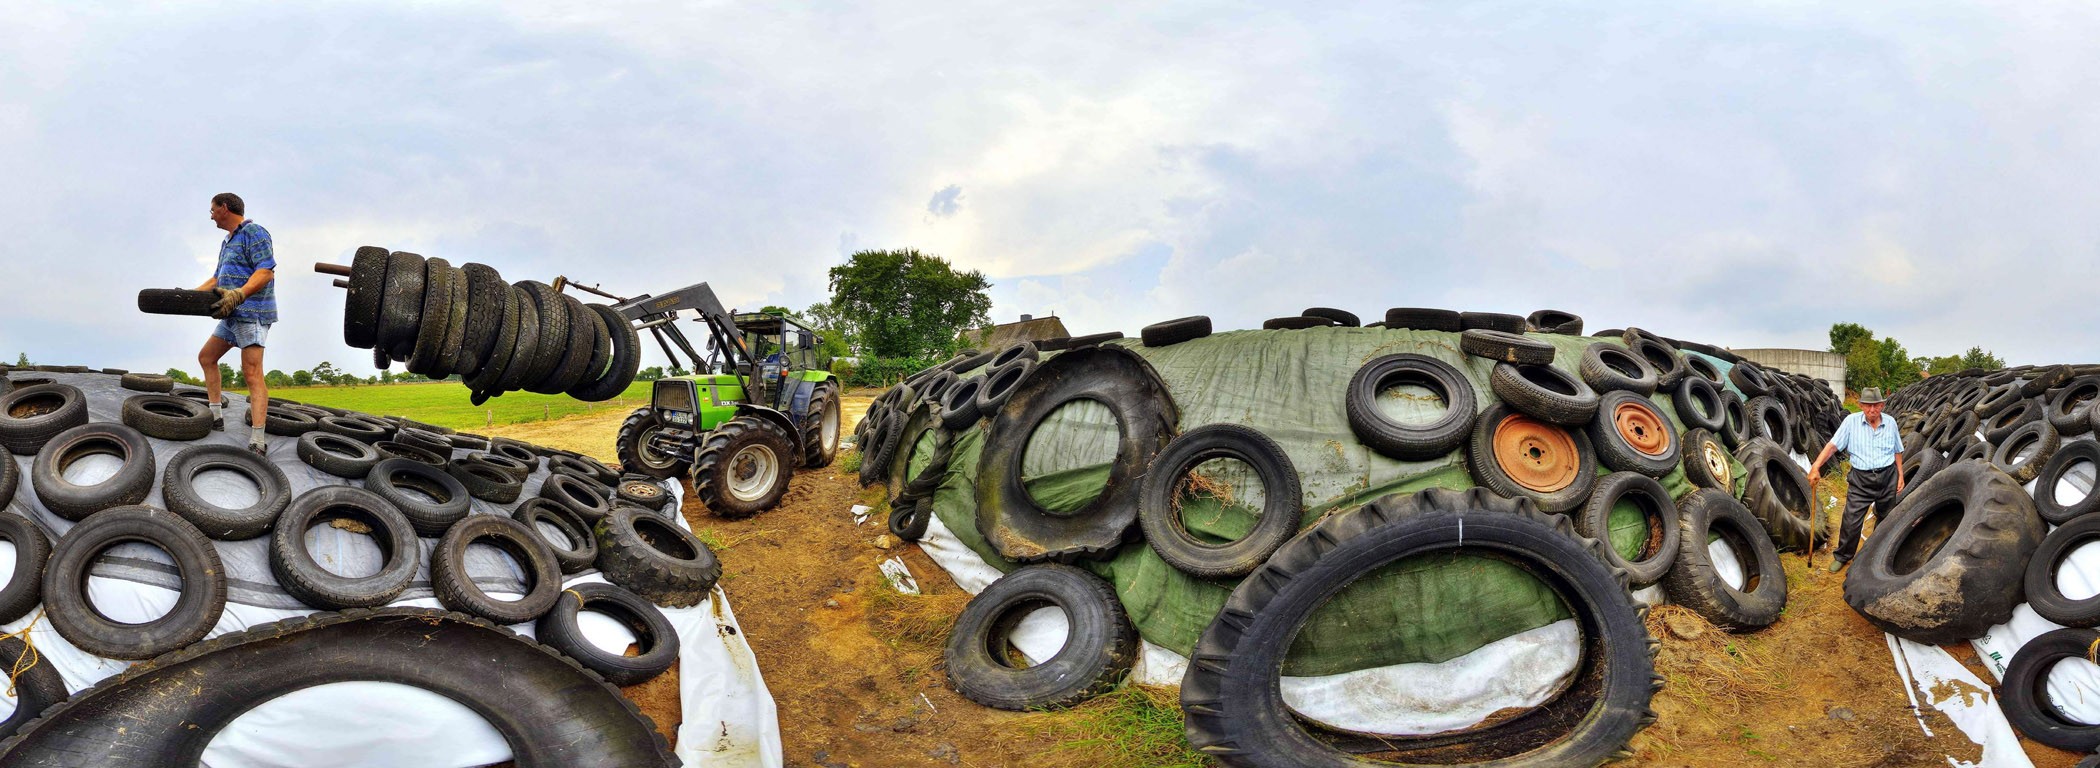 General 2100x768 tires fisheye lens tractors heavy equipment